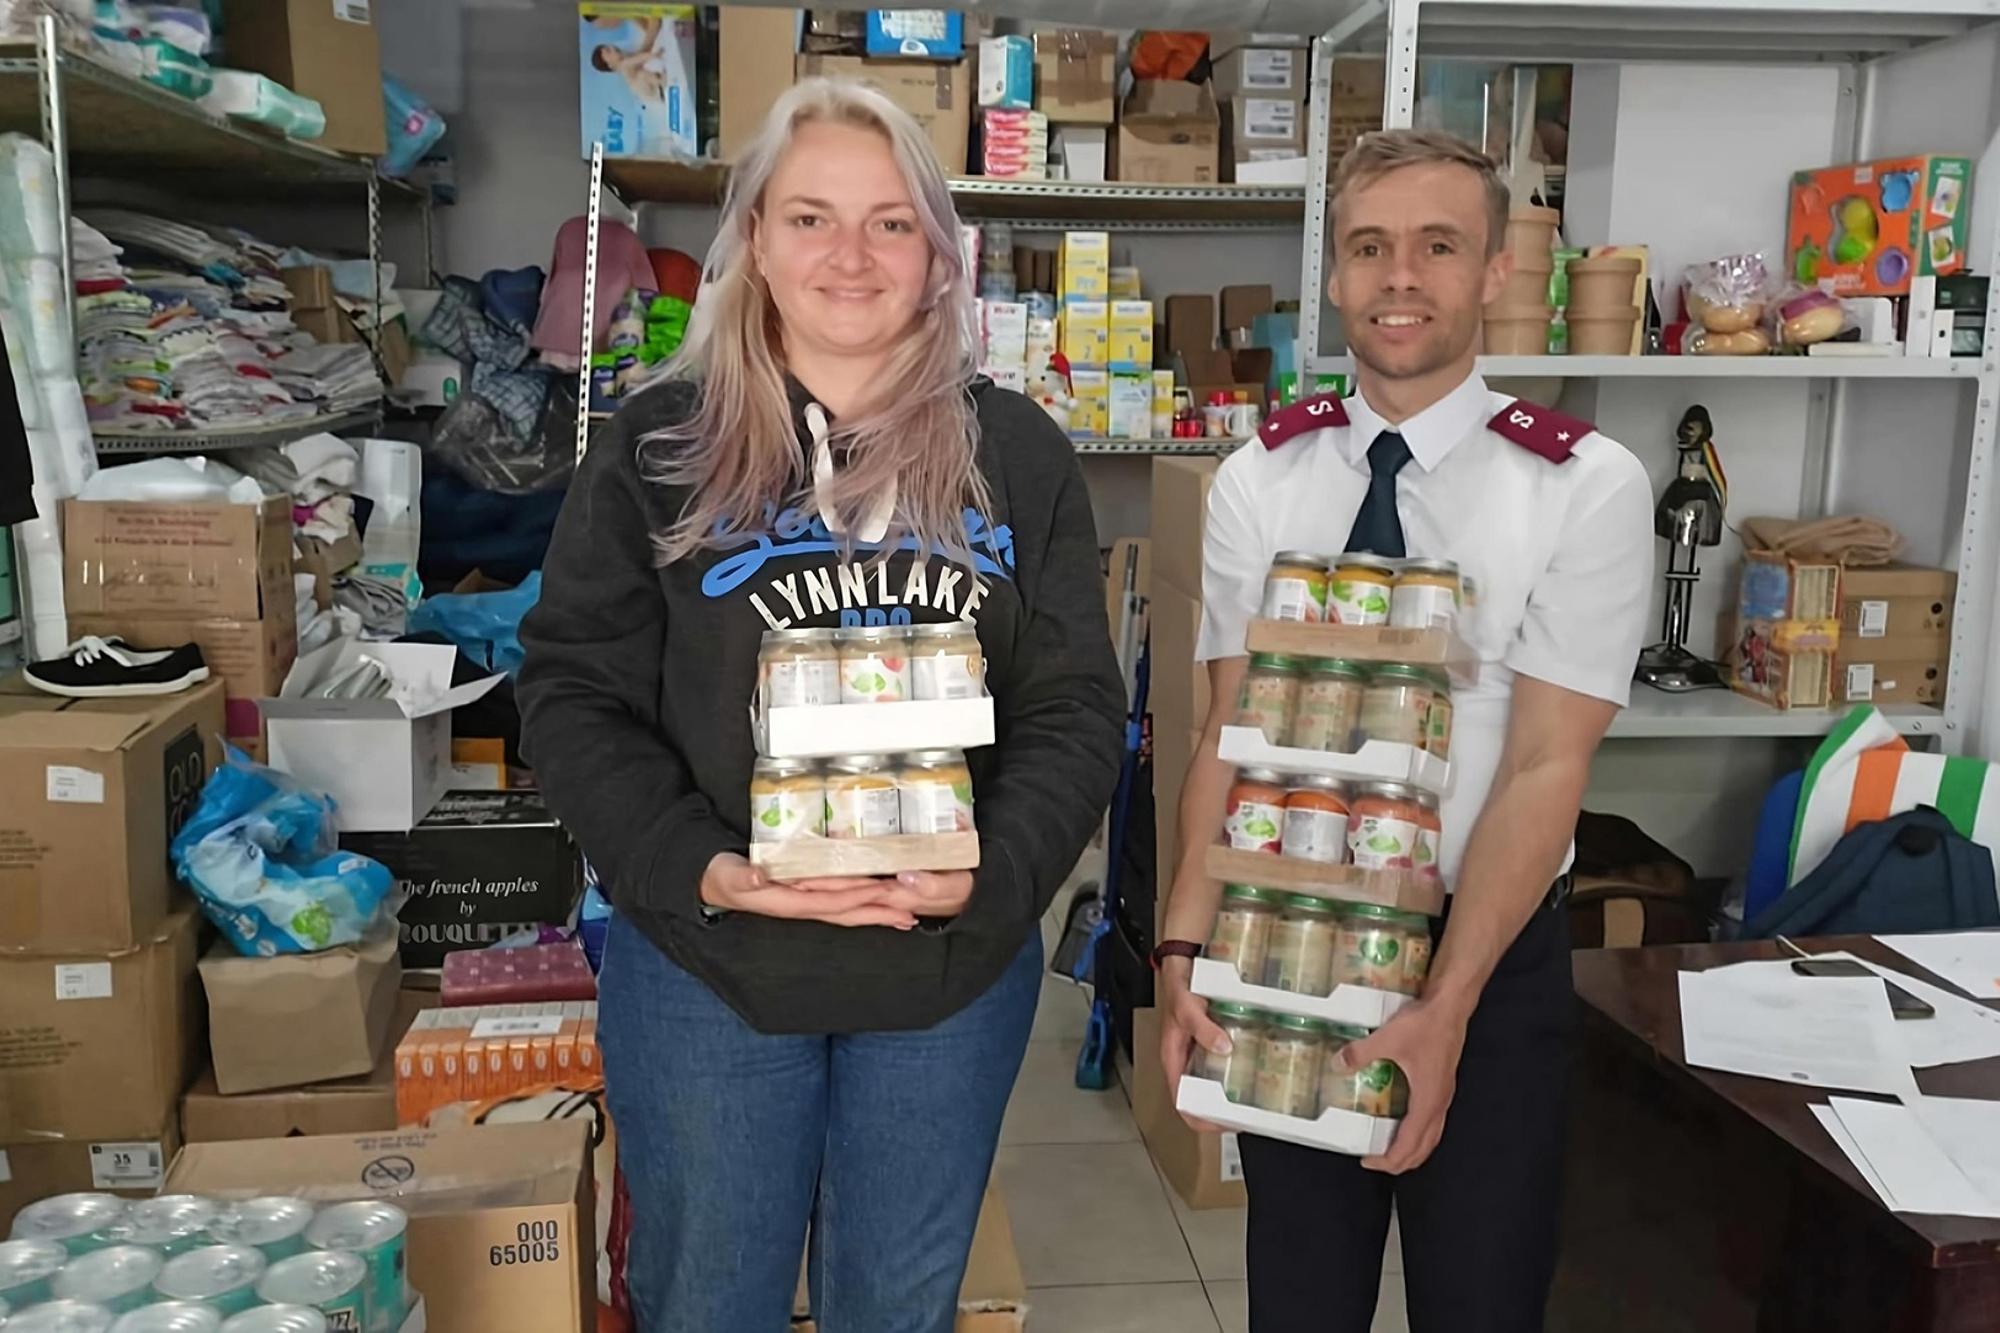 En kvinna och en man står och håller i matförpackningar - i bakgrunden syns ett förråd fullt med matvaror och kläder. Mannen är klädd i Frälsningsarméns uniform.